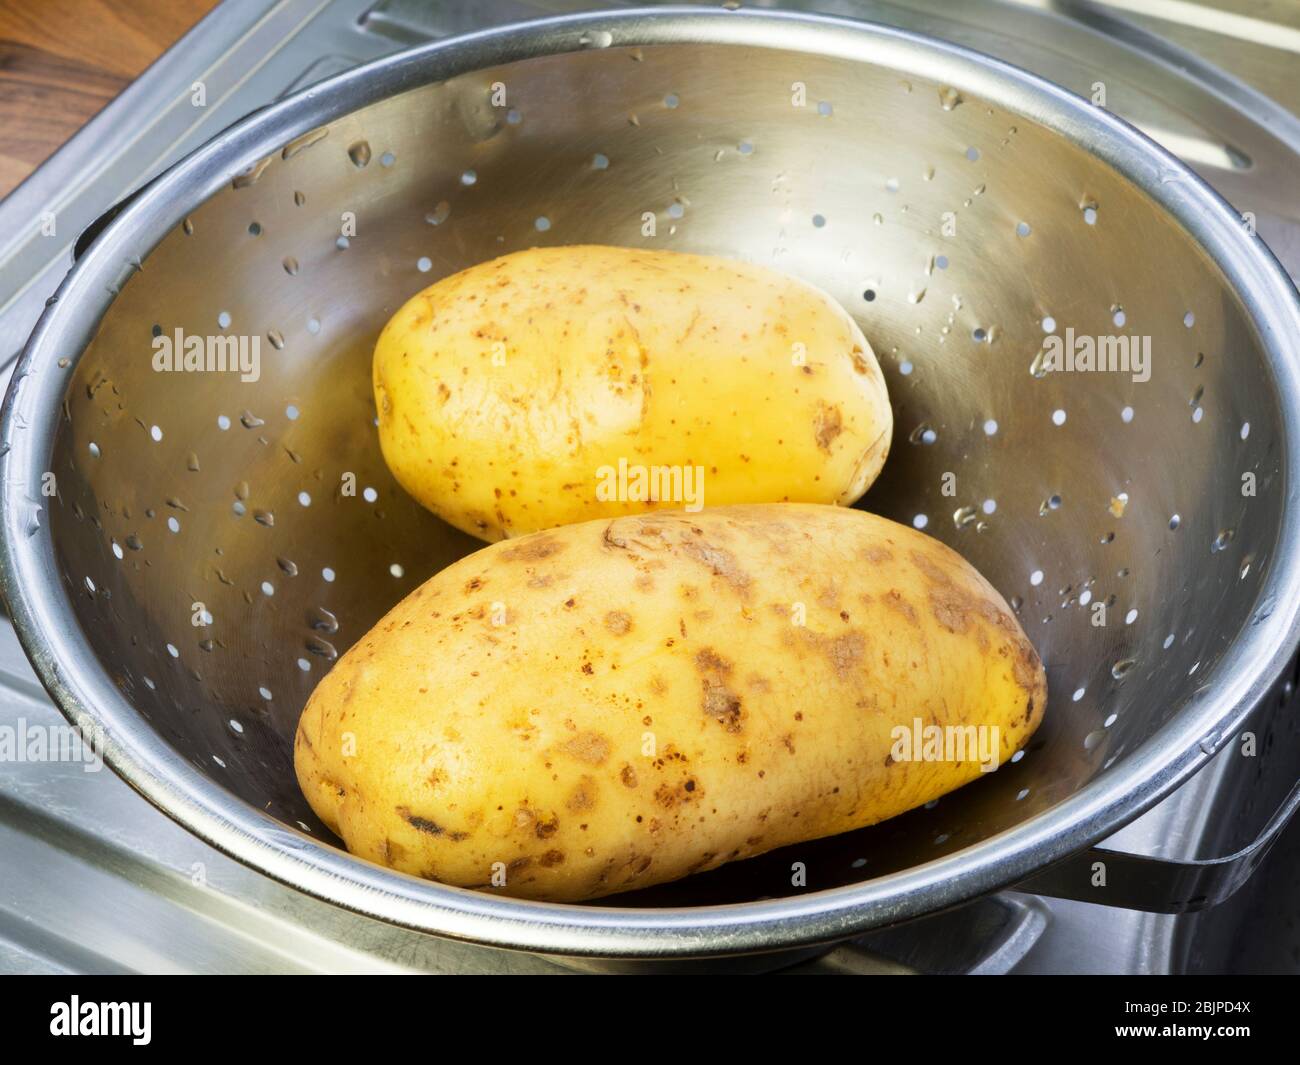 Due grandi patate bianche lavate in un colapasta di acciaio inossidabile su uno scolo da cucina Foto Stock